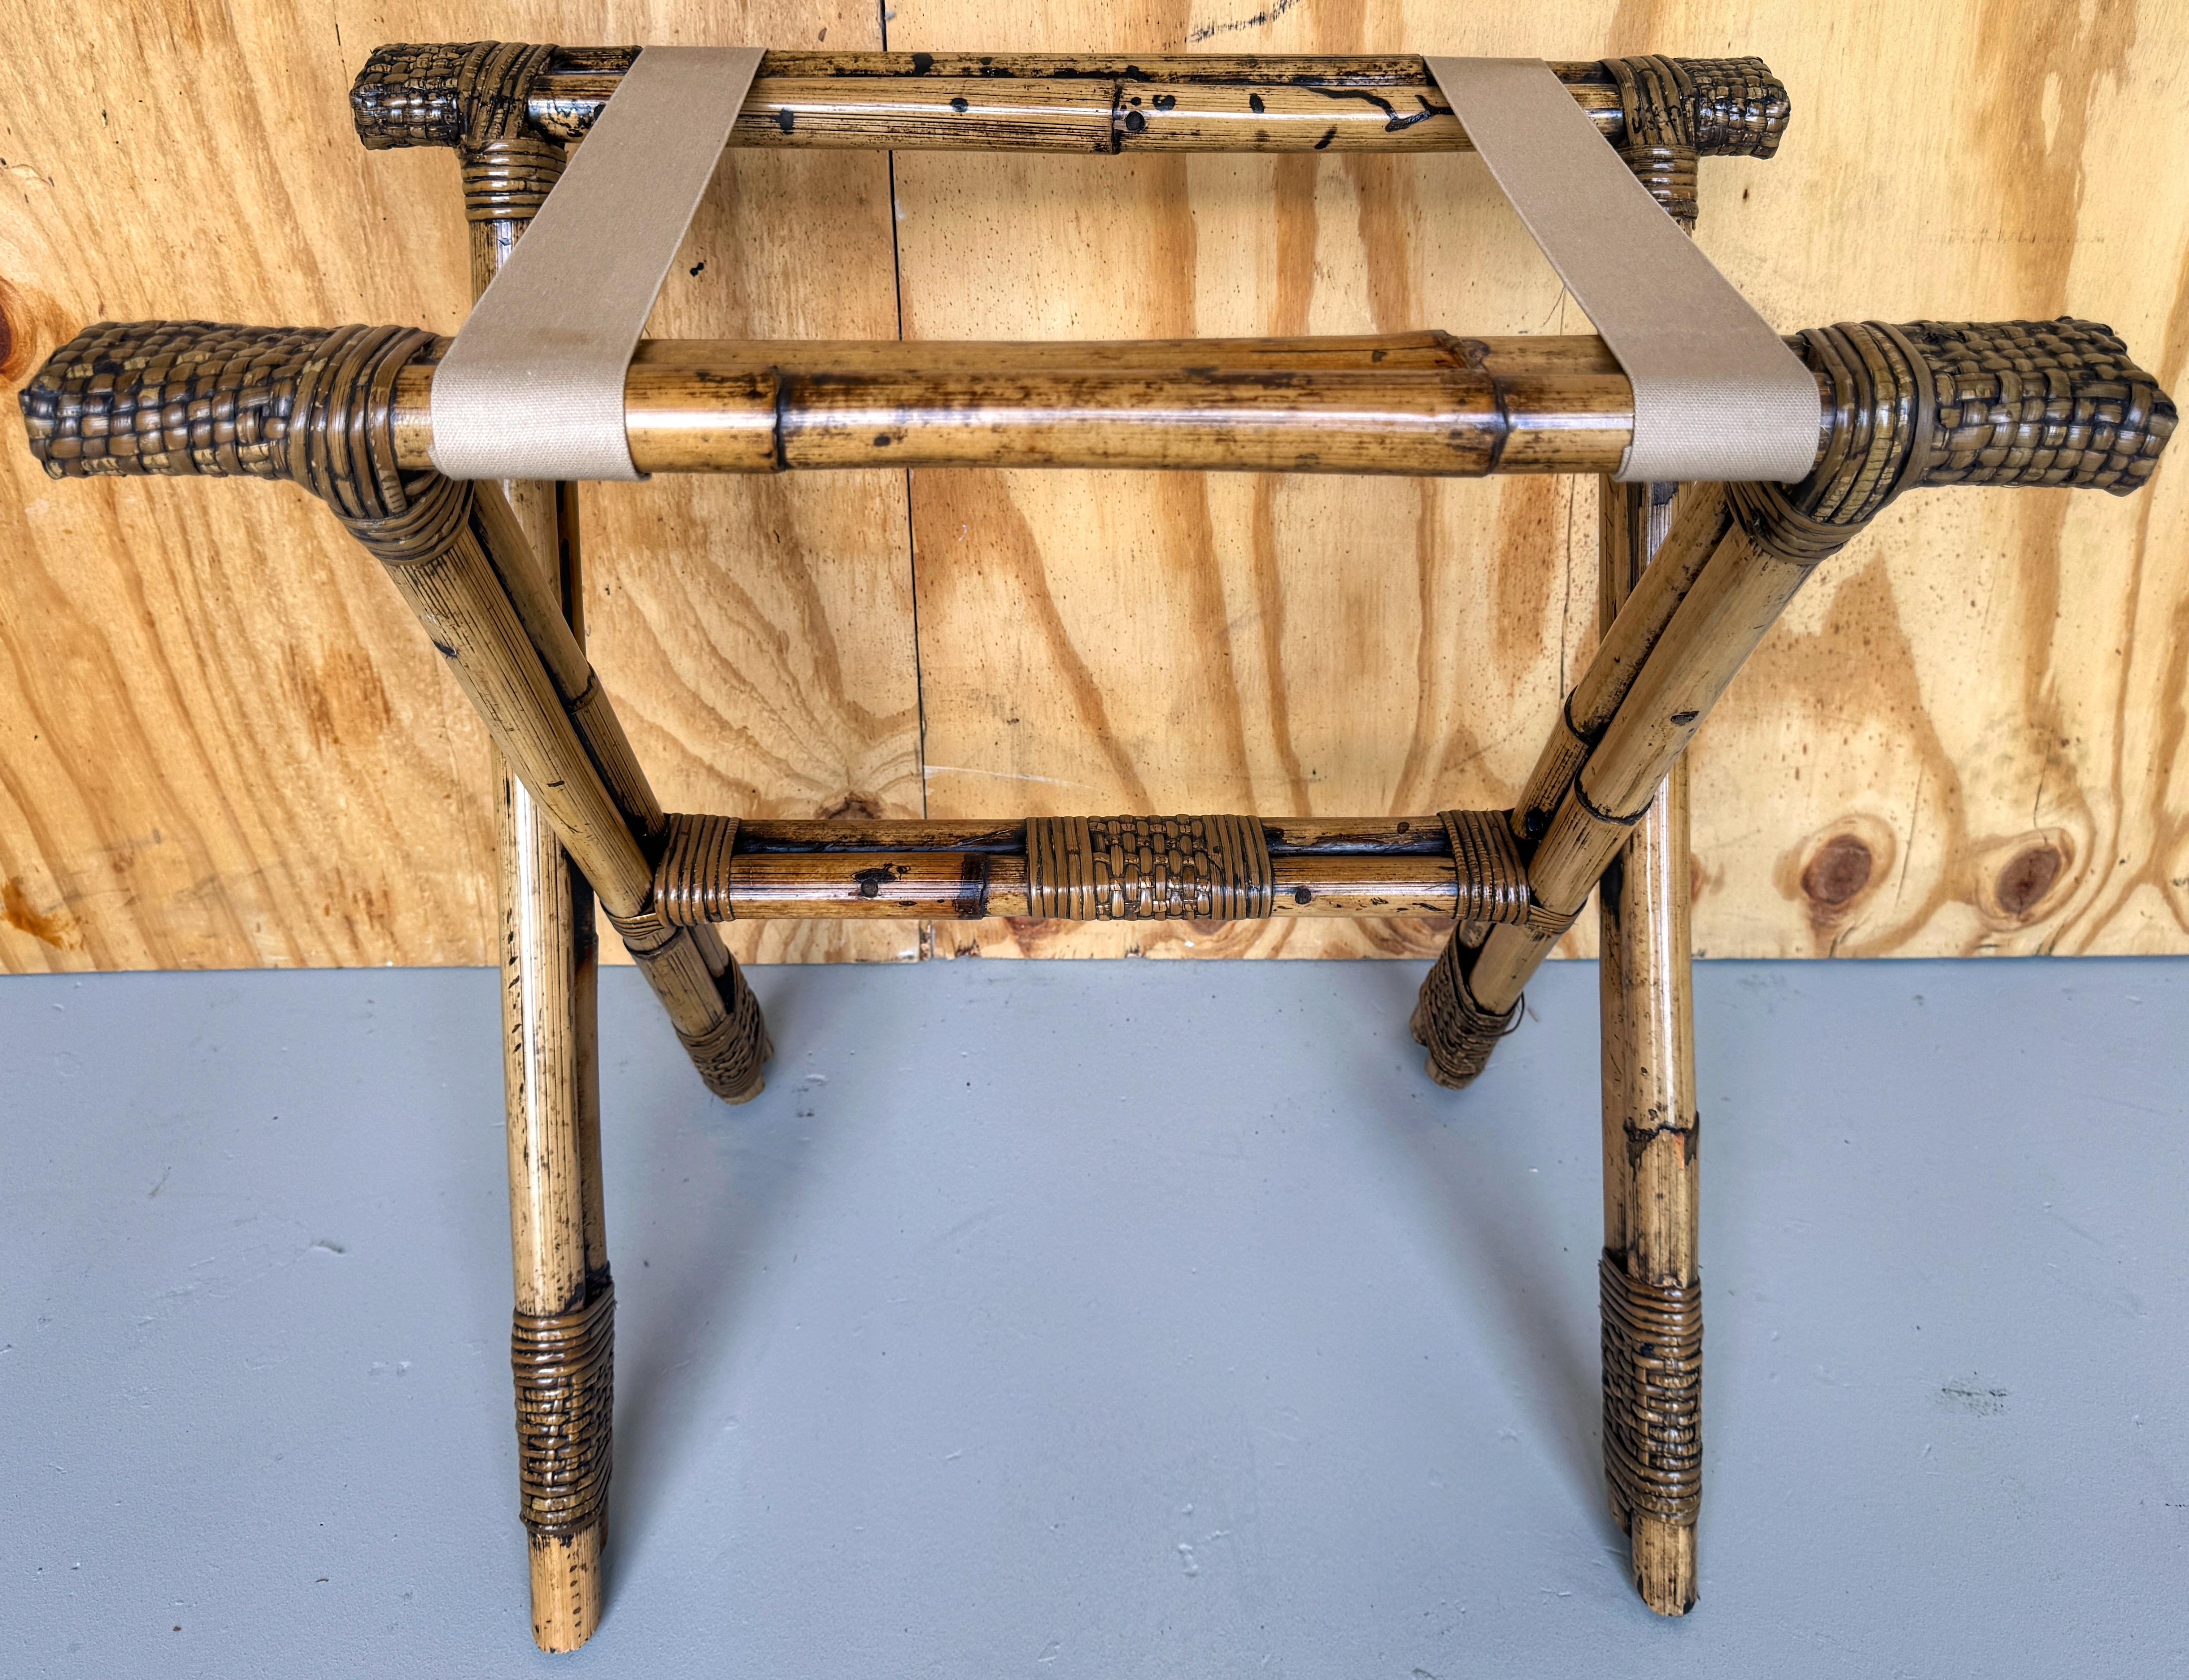 Vintage Bamboo Reed and Willow Gepäckträger/Tablett Tischständer 
Asien, ca. 1960er Jahre 

Der atemberaubende Vintage-Tischständer aus Bambus, Schilf und Weide ist ein vielseitiges Stück, das Funktionalität mit natürlicher Eleganz verbindet. Der